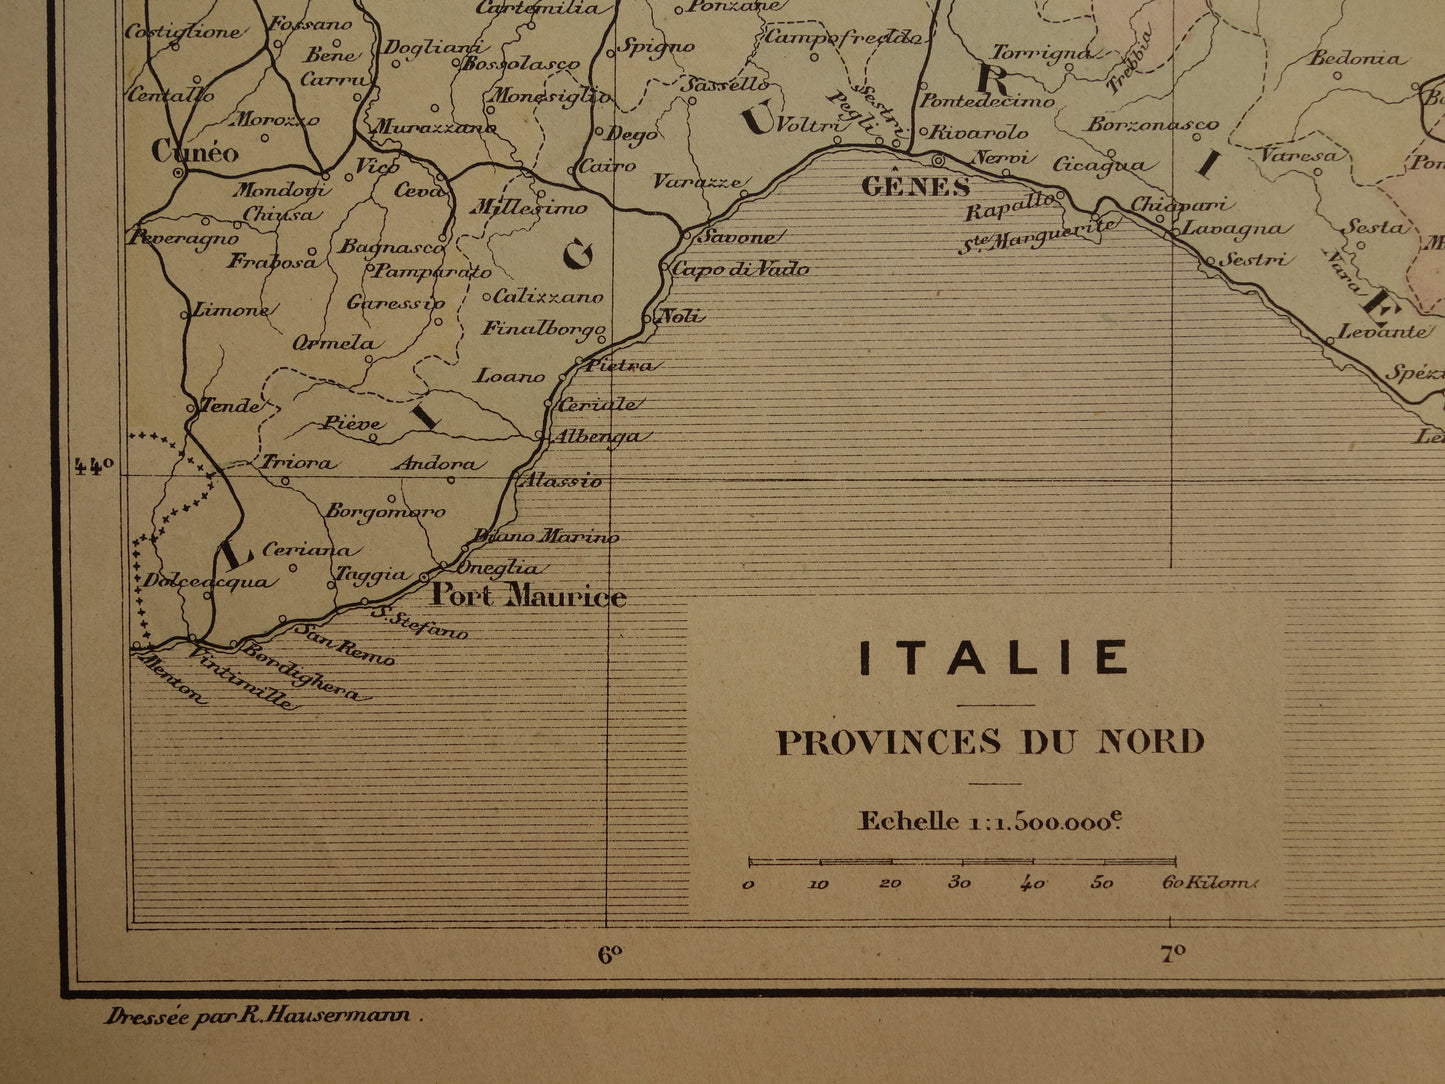 Oude kaart van Italië historische landkaart noord-Italie oude vintage kaarten